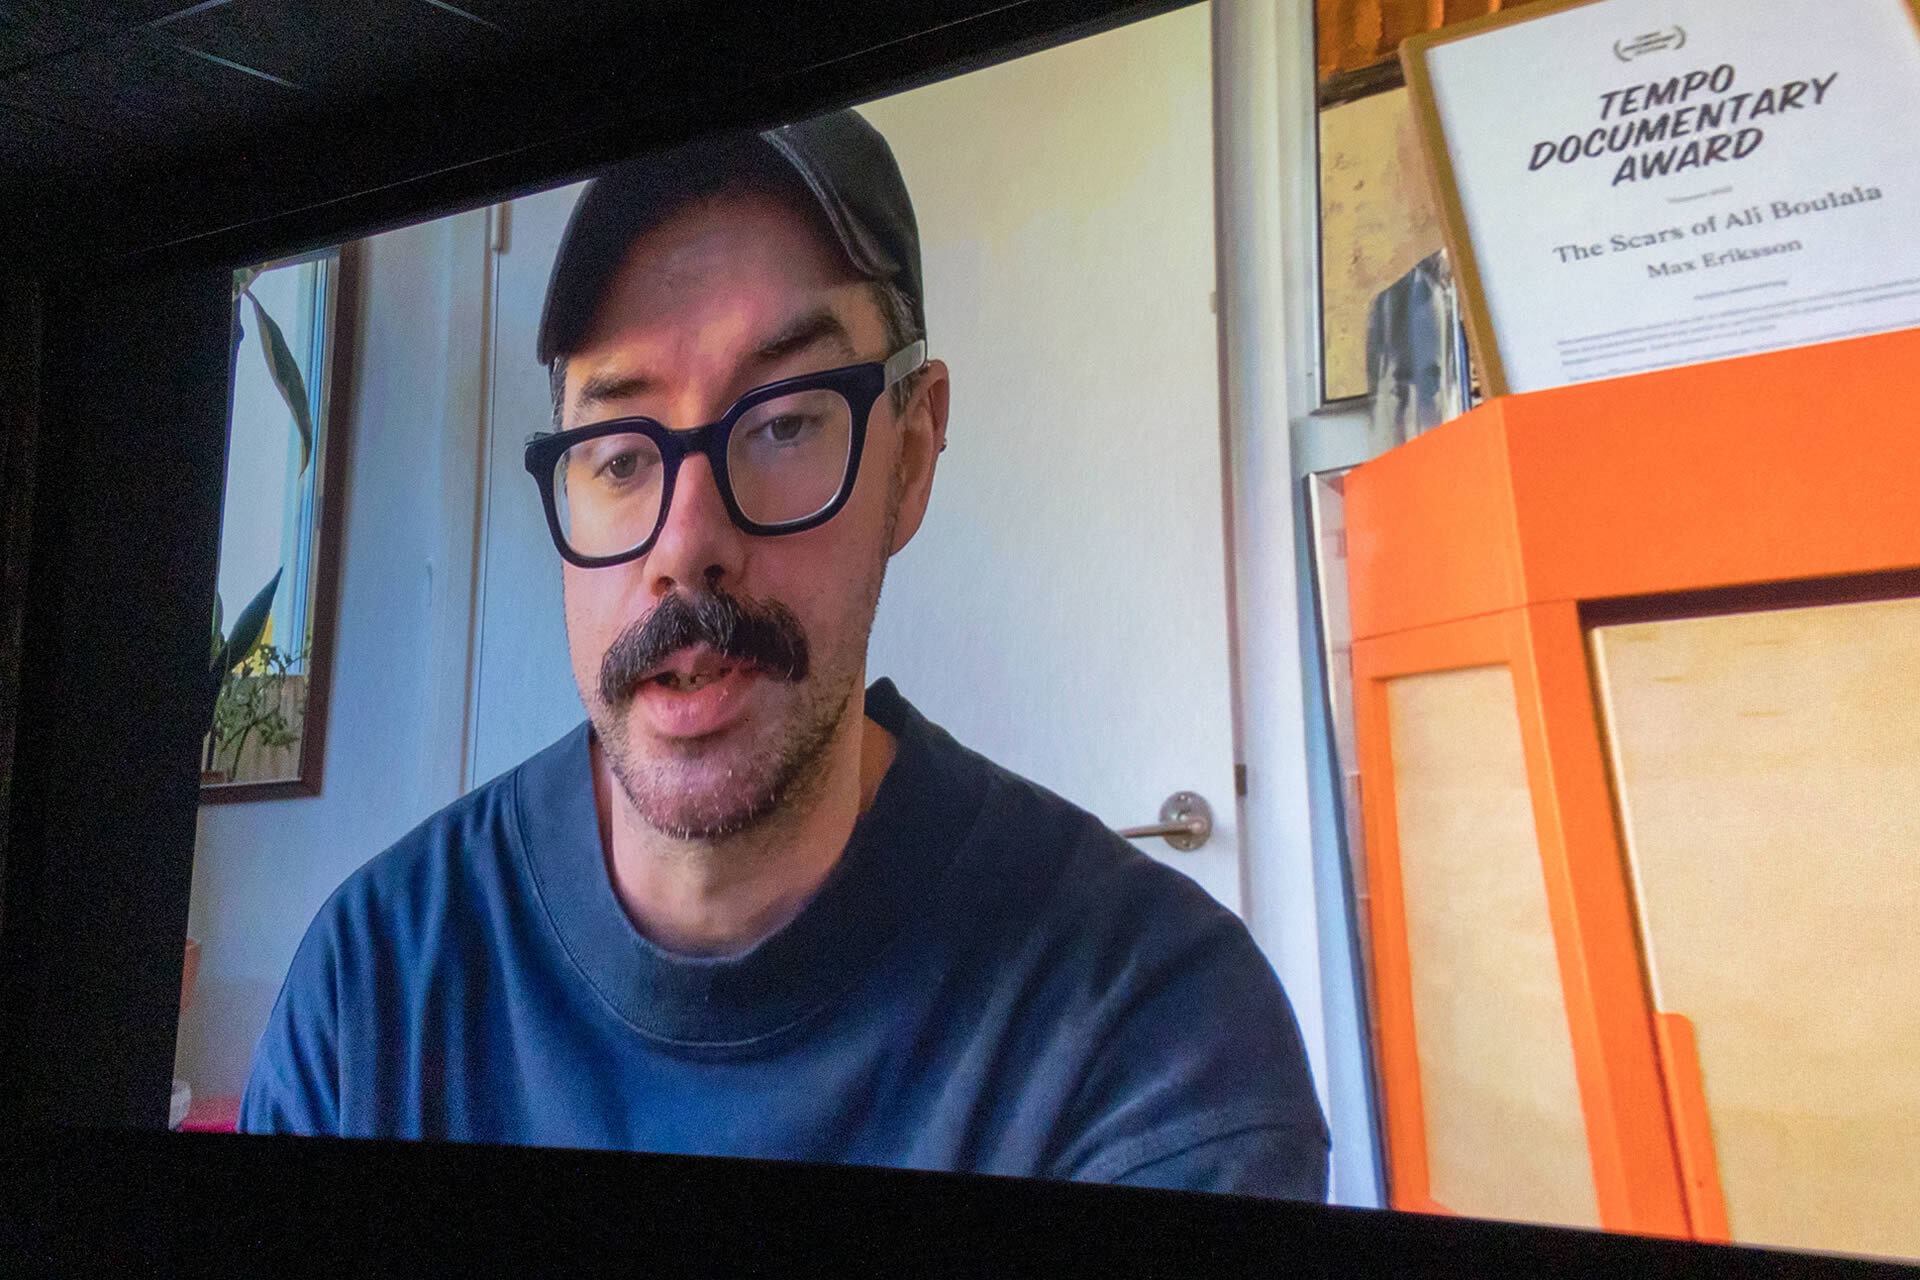 HoF 2022: Regisseur Max Eriksson mit einer Videobotschaft zur Premiere von THE SCARS OF ALI BOULALA